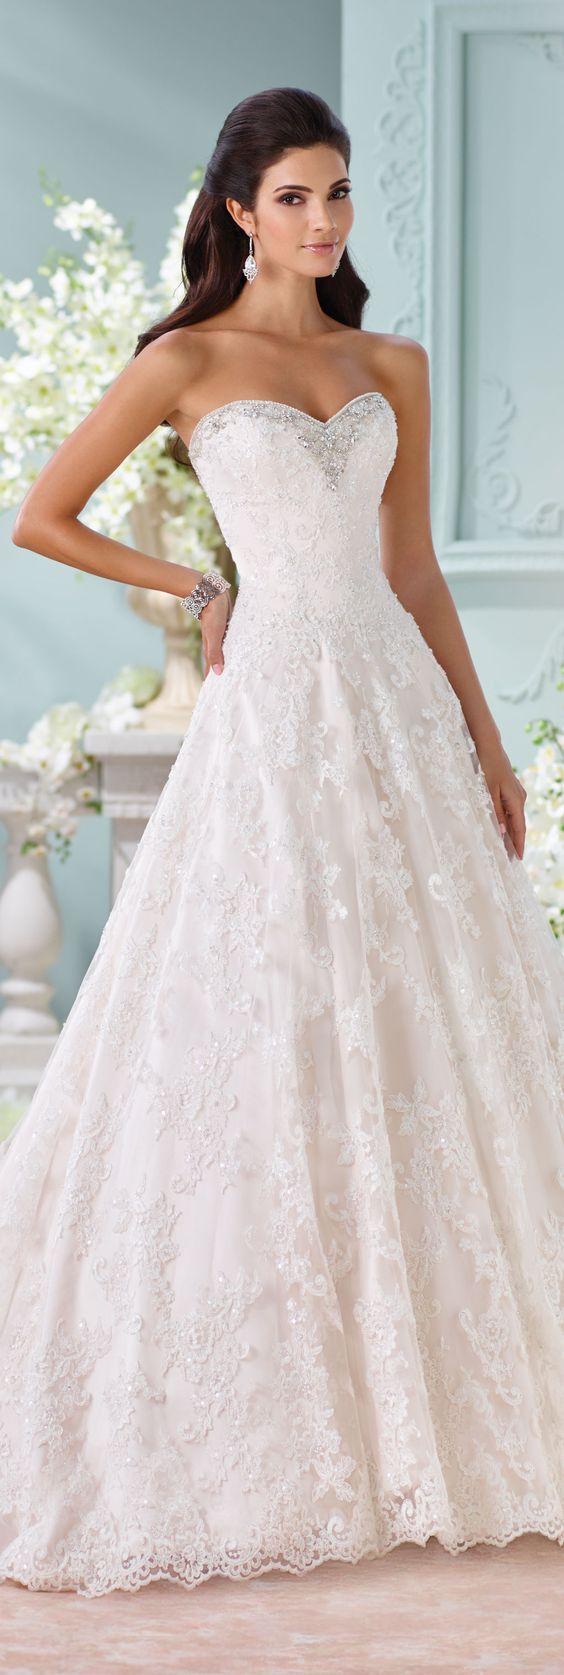 Wedding - Alencon Lace Wedding Dress